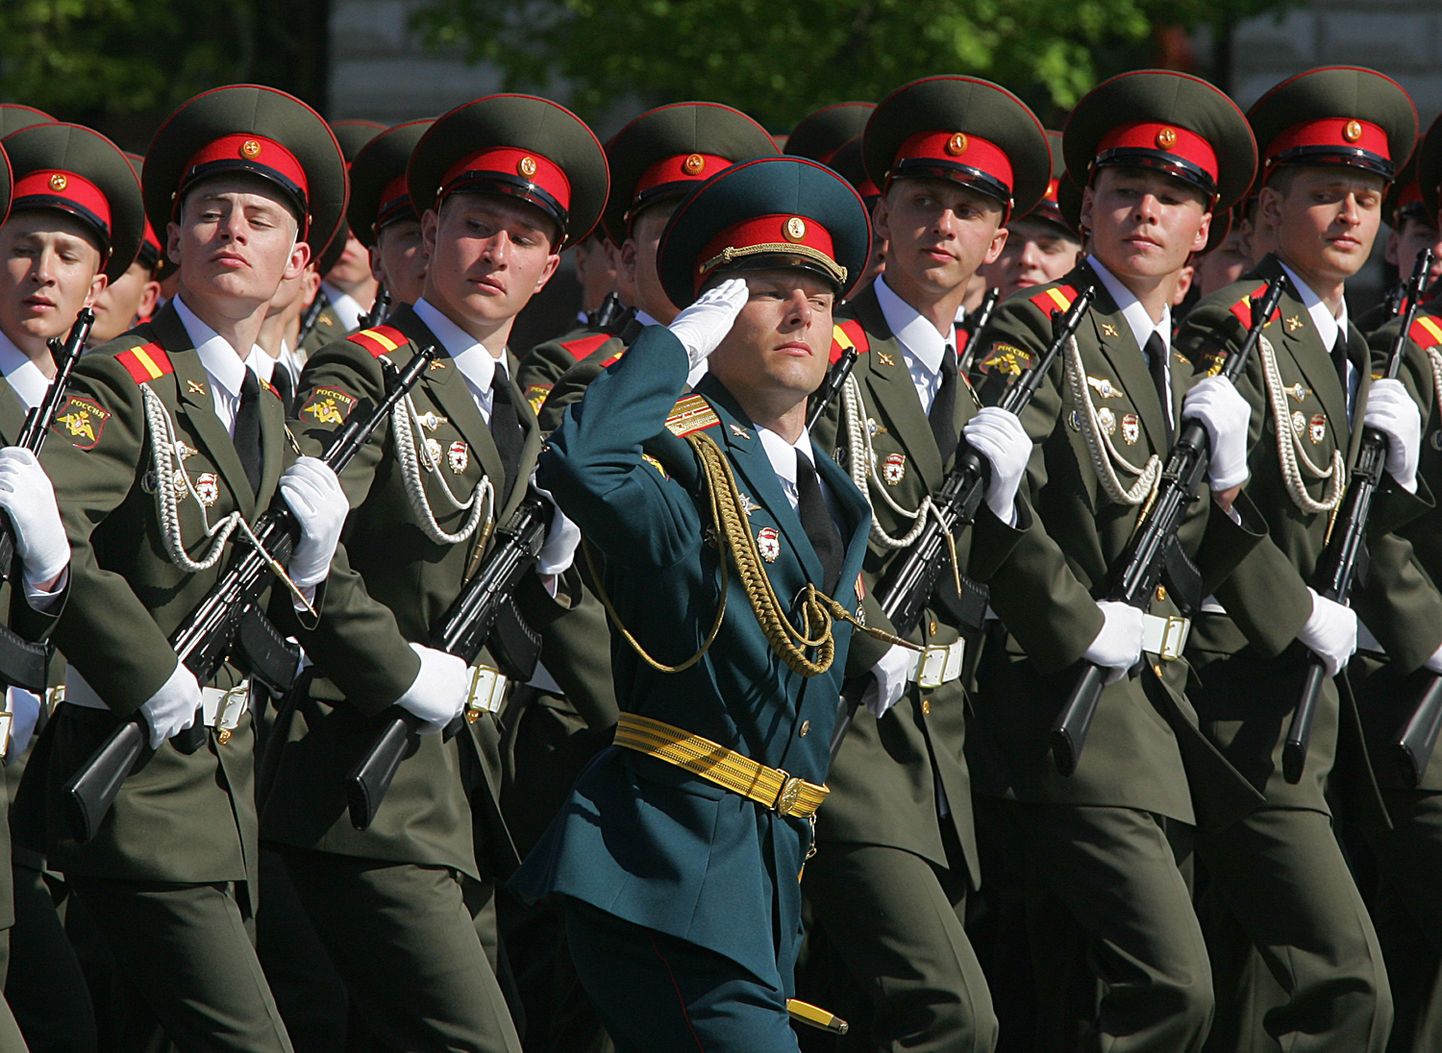 Vene sõjaväelased 9. mai paraadil Moskvas Punasel väljakul.